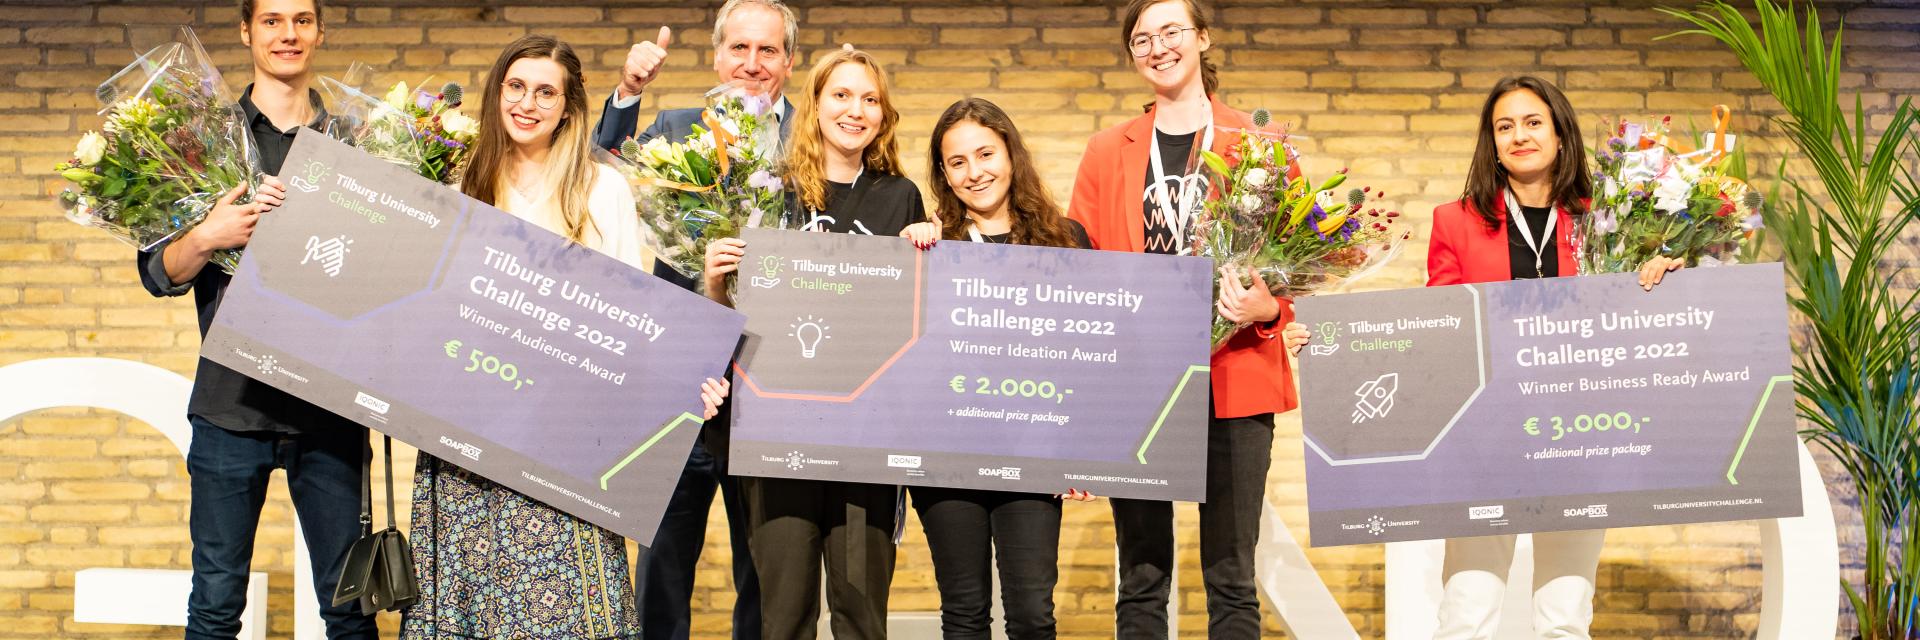 Tilburg University Challenge 2022